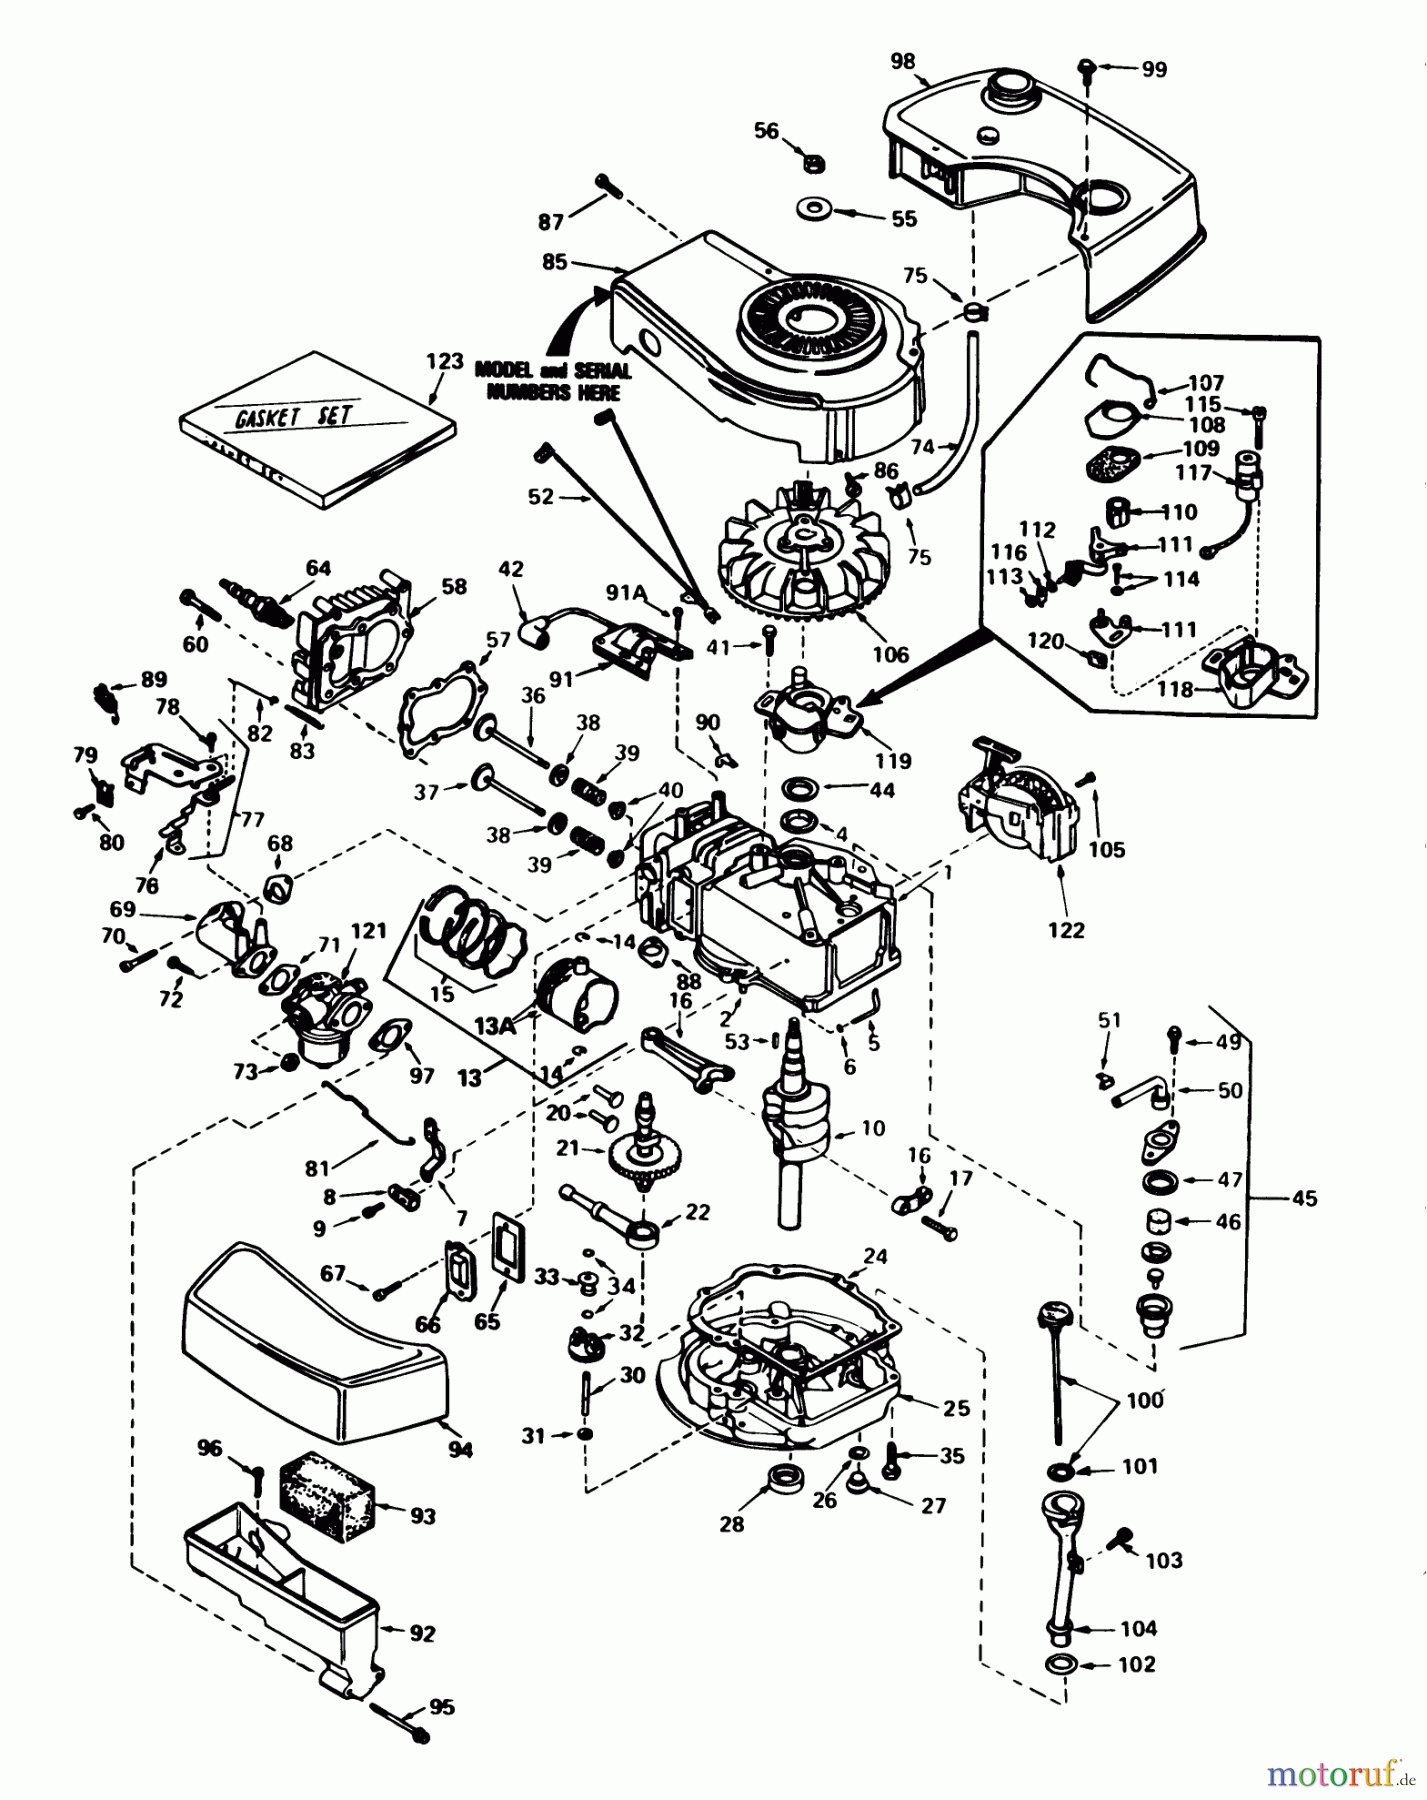  Toro Neu Mowers, Walk-Behind Seite 1 20762 - Toro Lawnmower, 1982 (2000001-2999999) ENGINE TECUMSEH MODEL NO. TNT 100-10077D